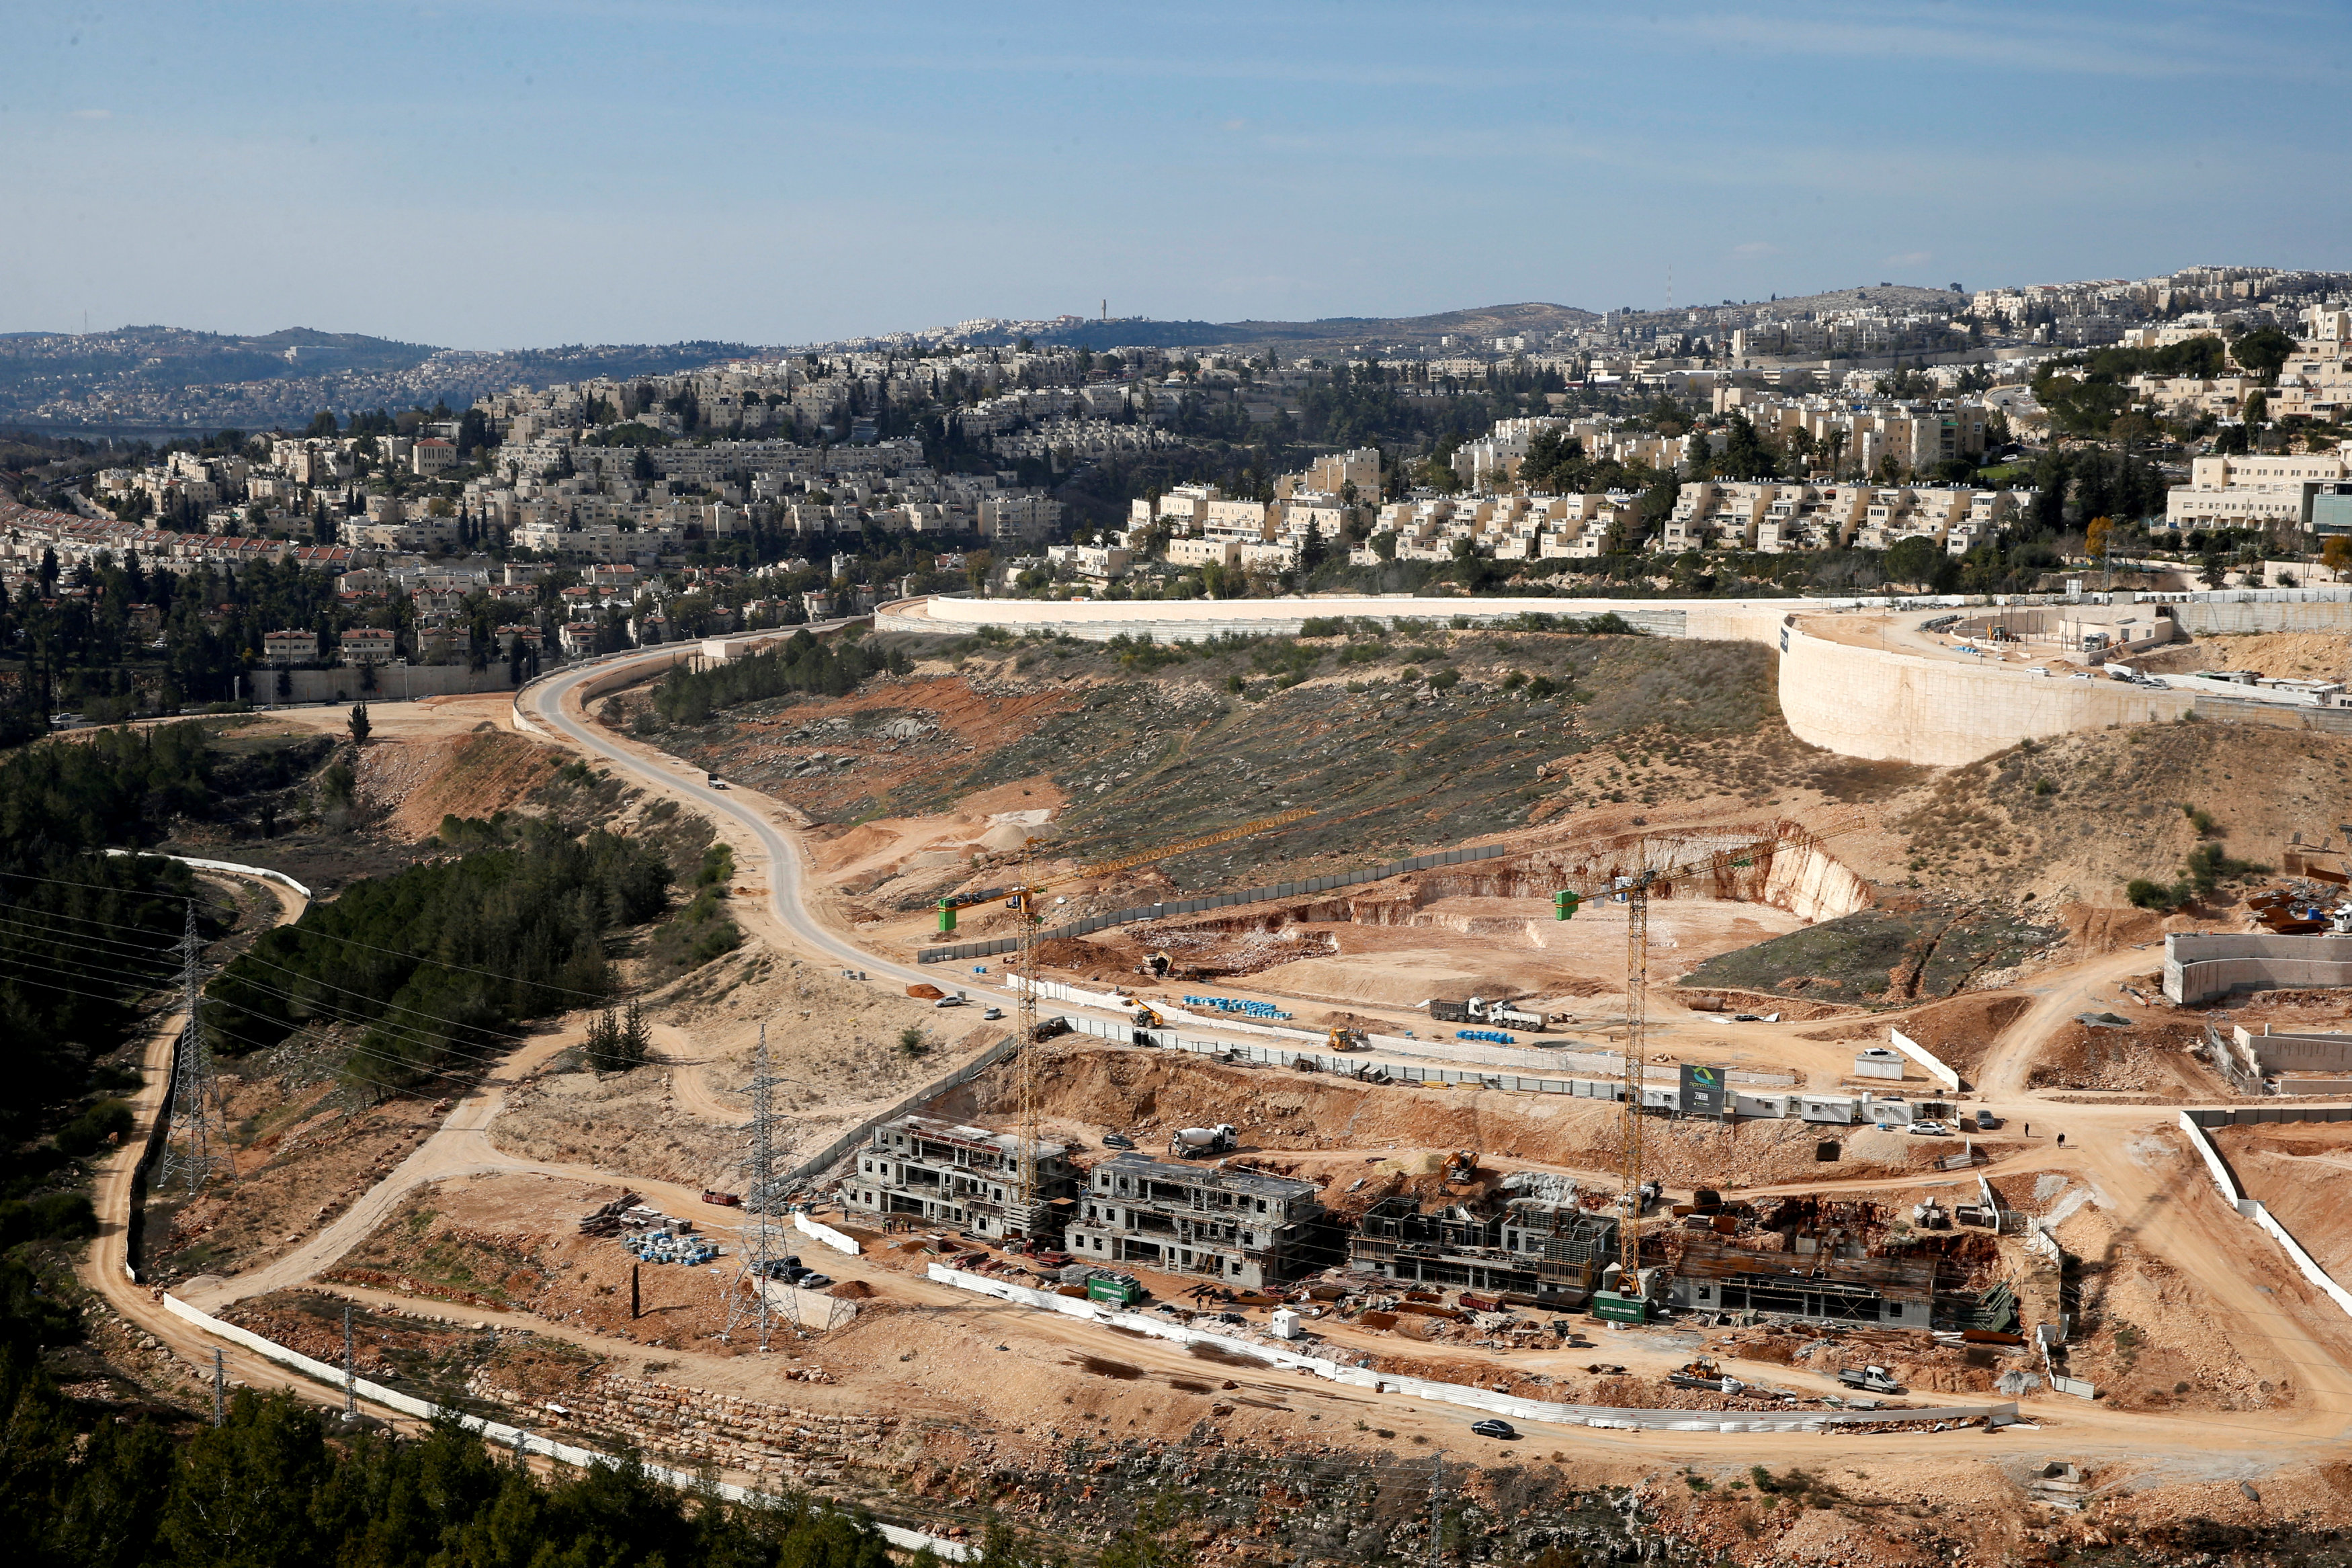 La decisión se produce dos días después de aprobarse más de 500 hogares en el este de Jerusalén.